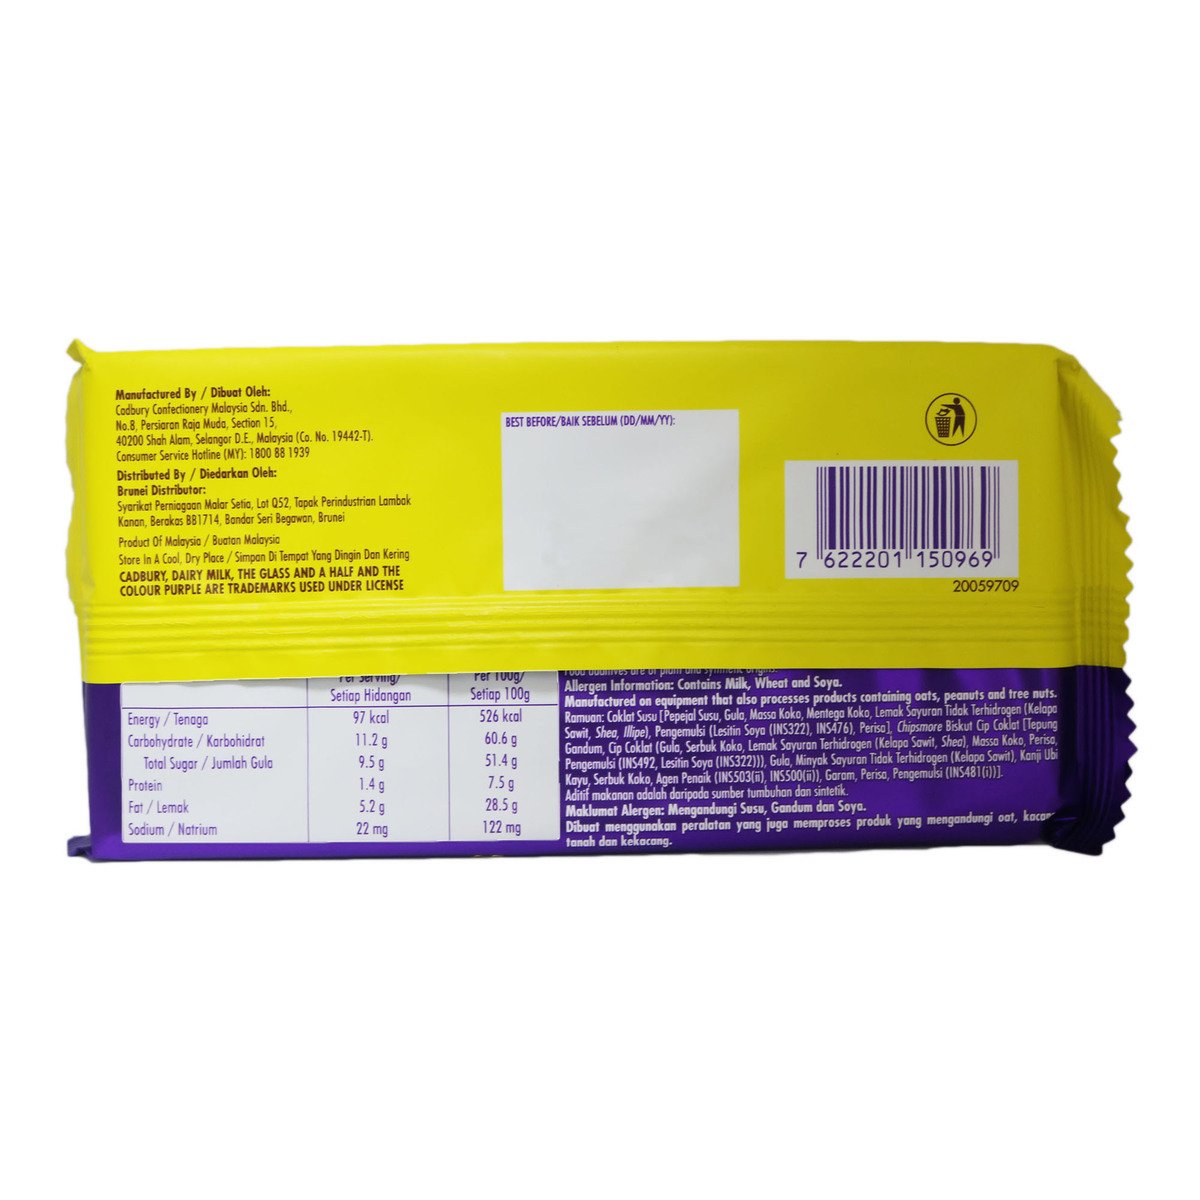 Cadbury Chipsmore 160g